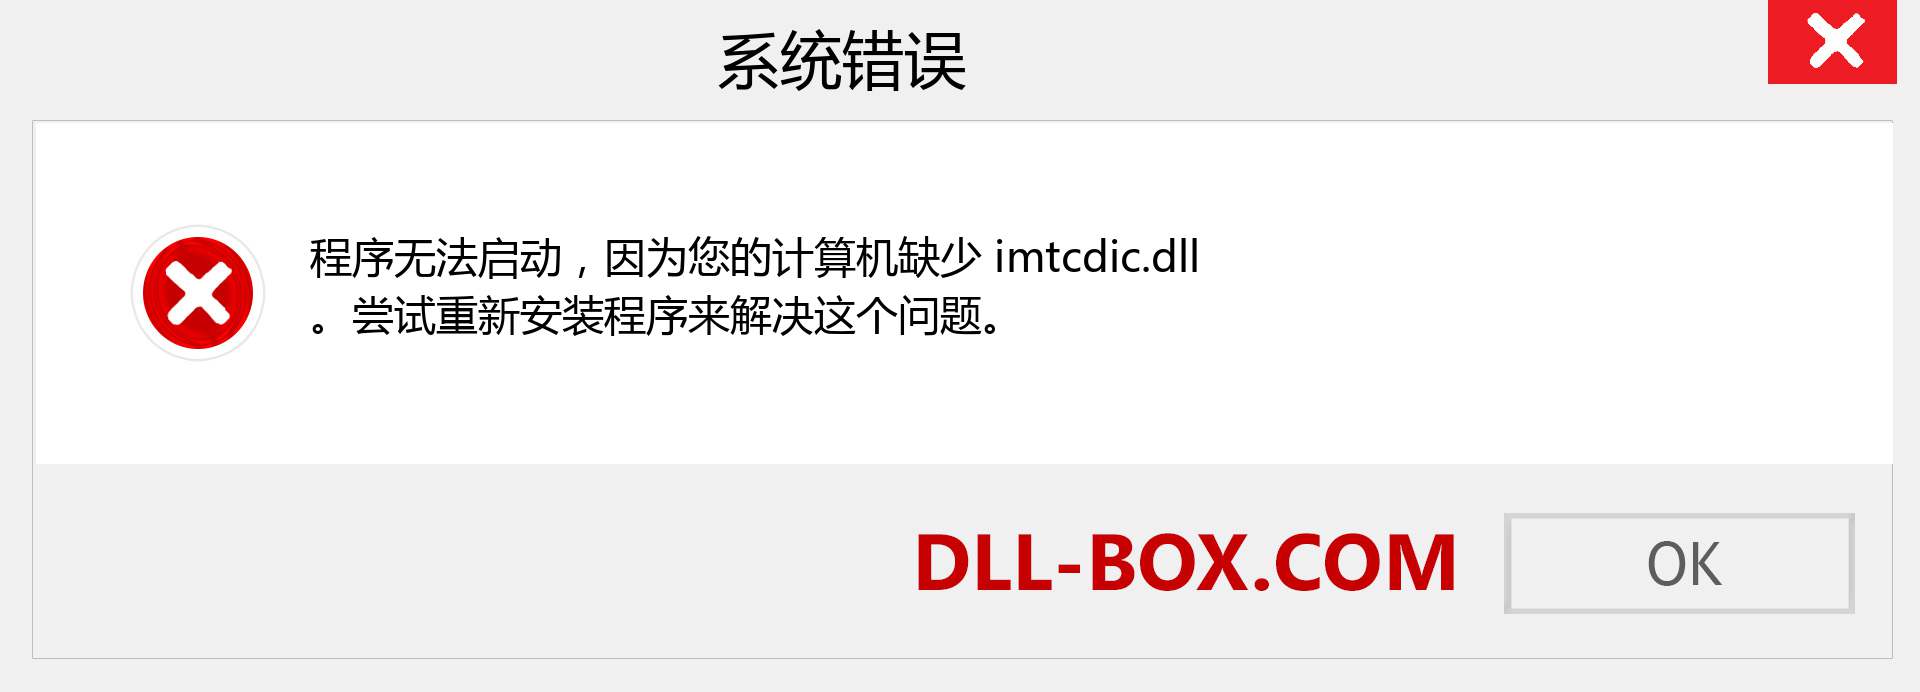 imtcdic.dll 文件丢失？。 适用于 Windows 7、8、10 的下载 - 修复 Windows、照片、图像上的 imtcdic dll 丢失错误